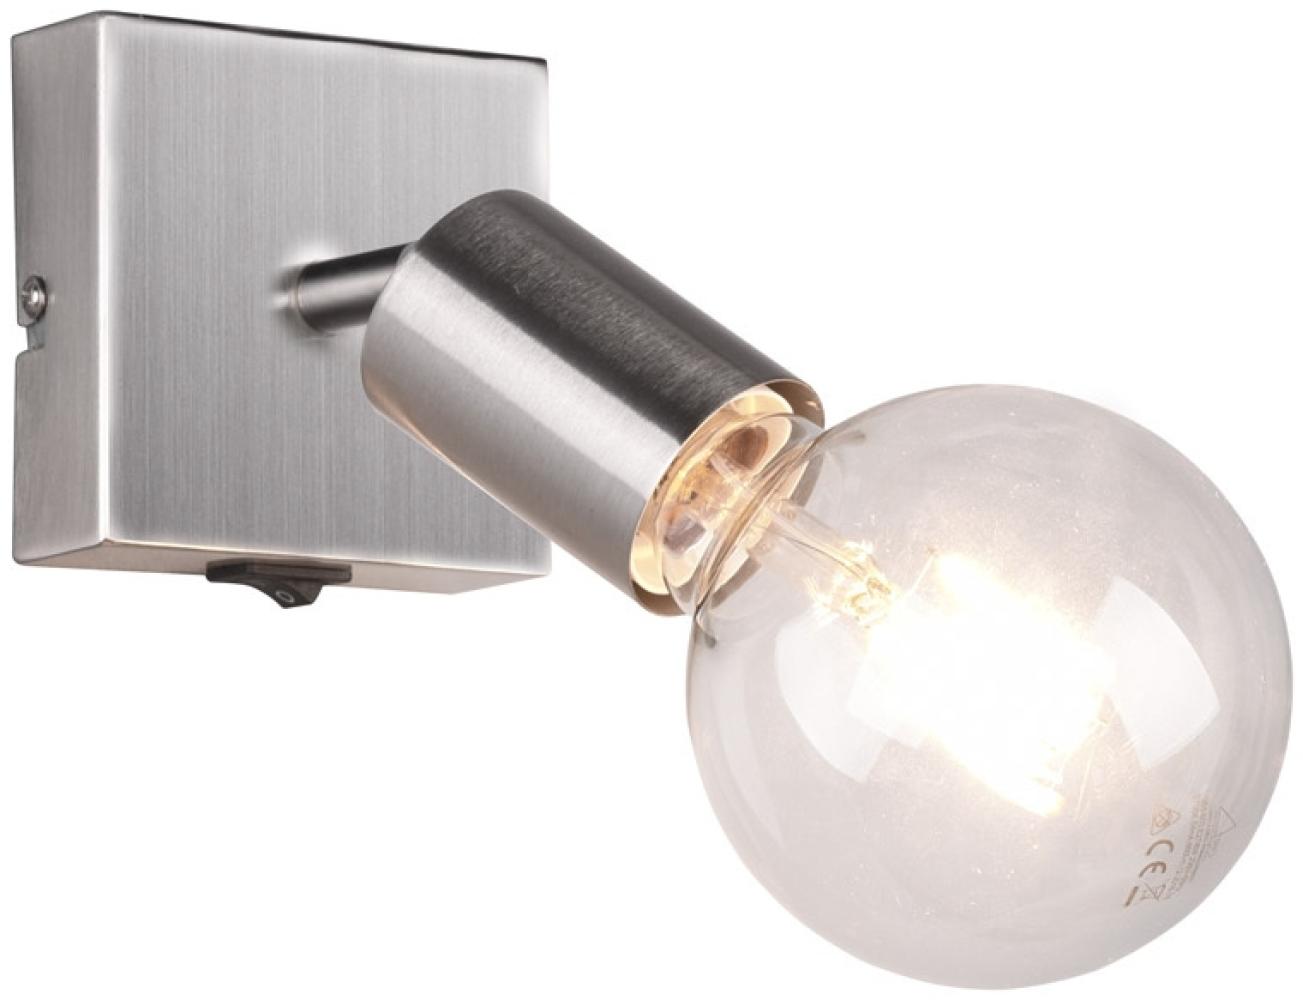 LED Wandstrahler Silber dimmbar, 1 flammiger Spot mit Schalter, 9x11cm Bild 1